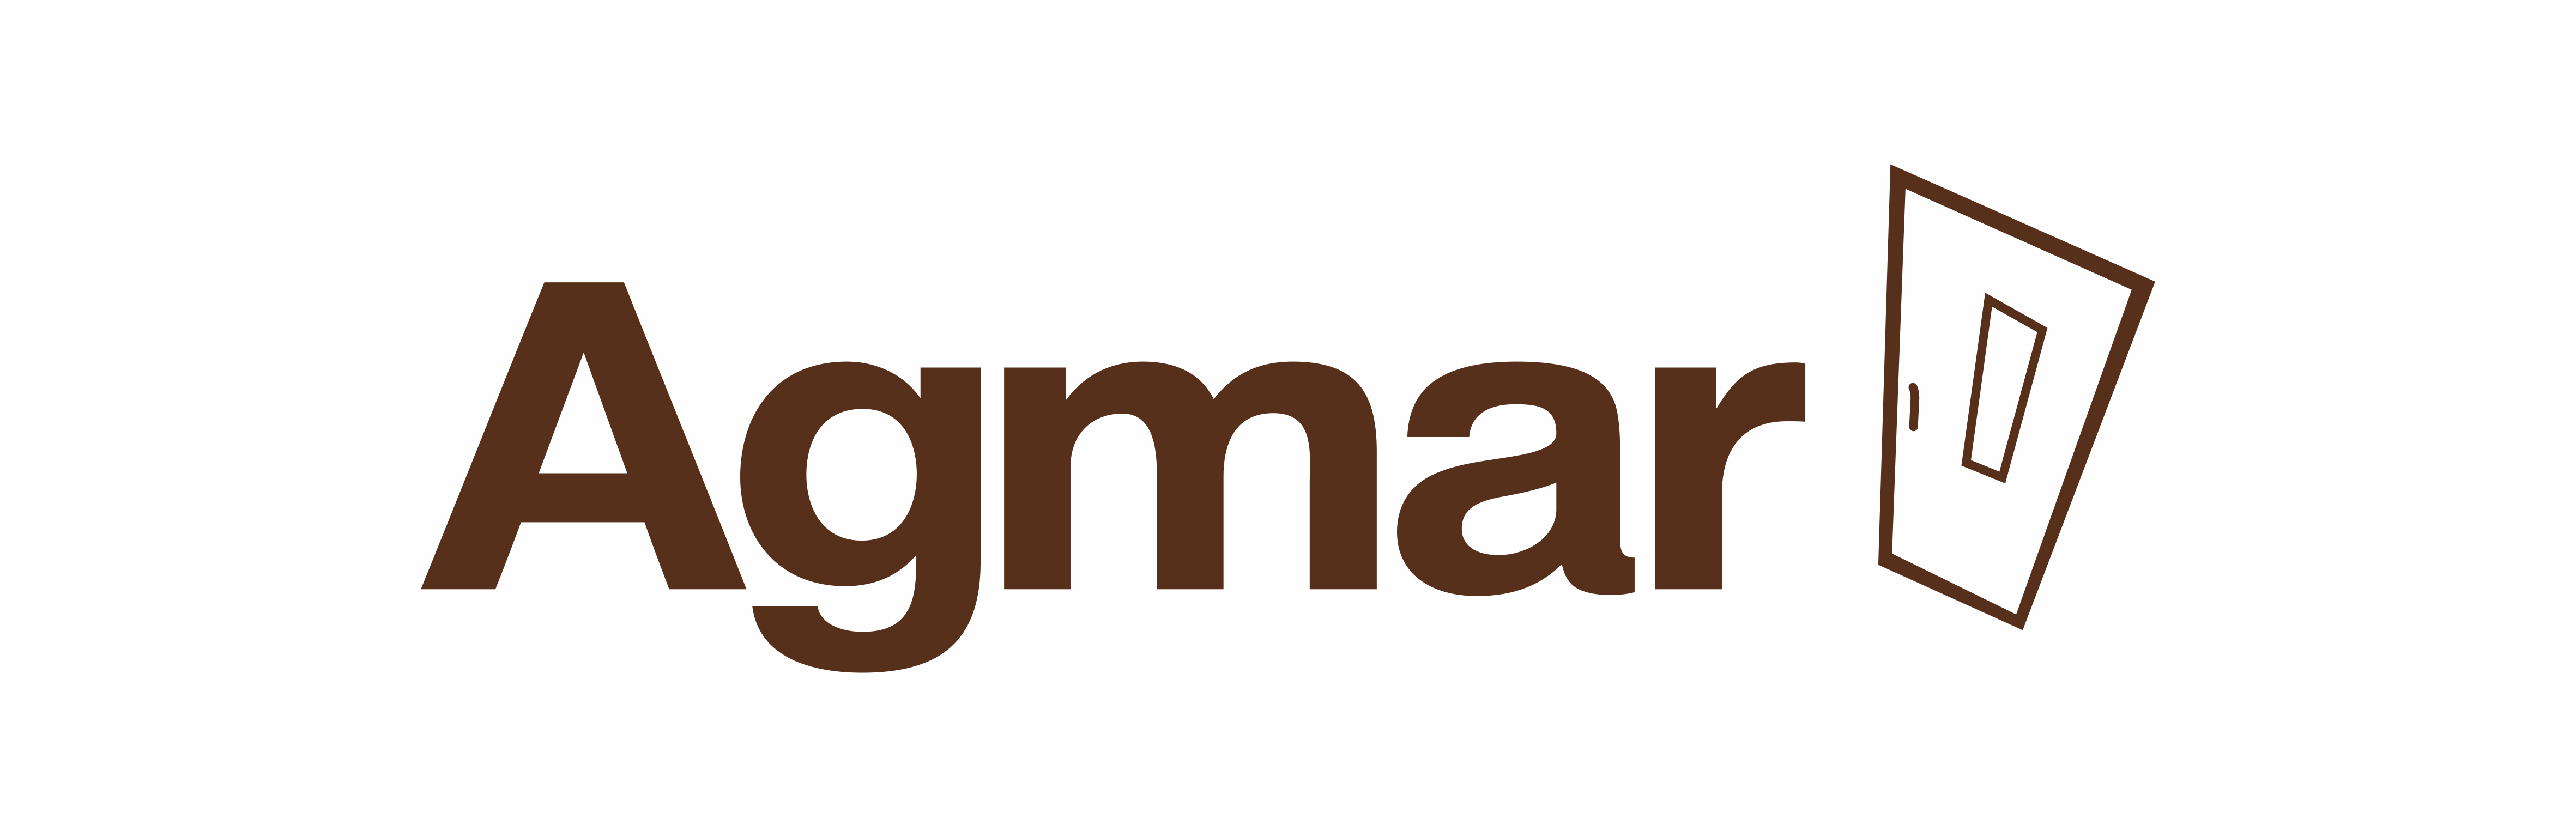 logotyp agmar